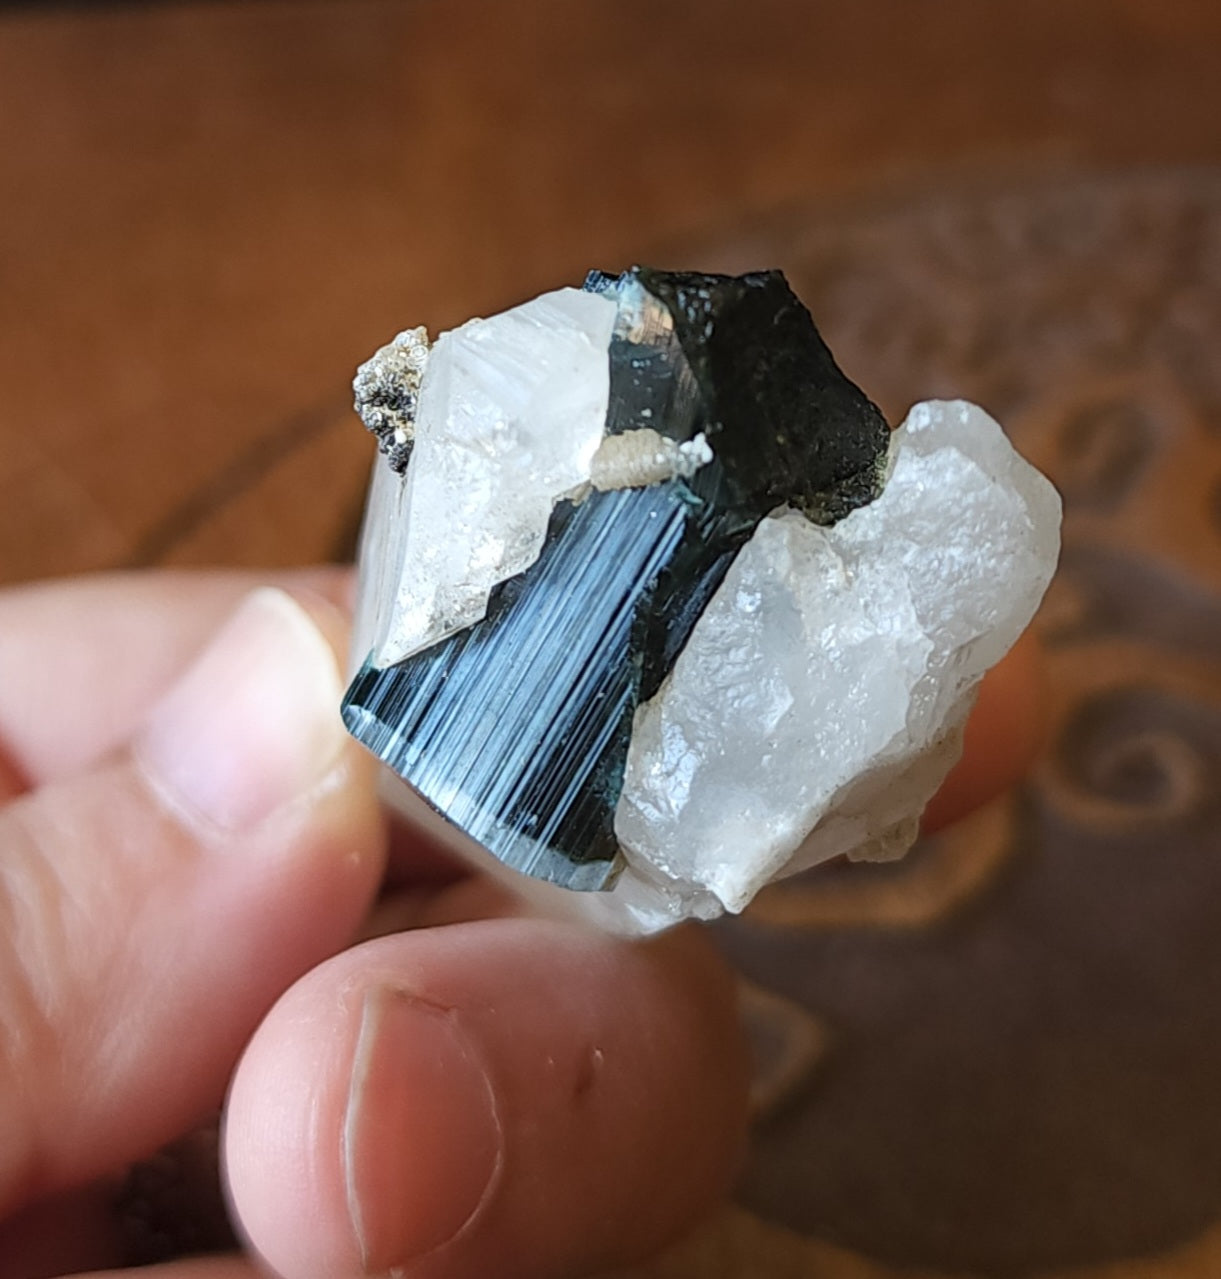 Blue Cap Tourmaline in Quartz with Cleavelandite